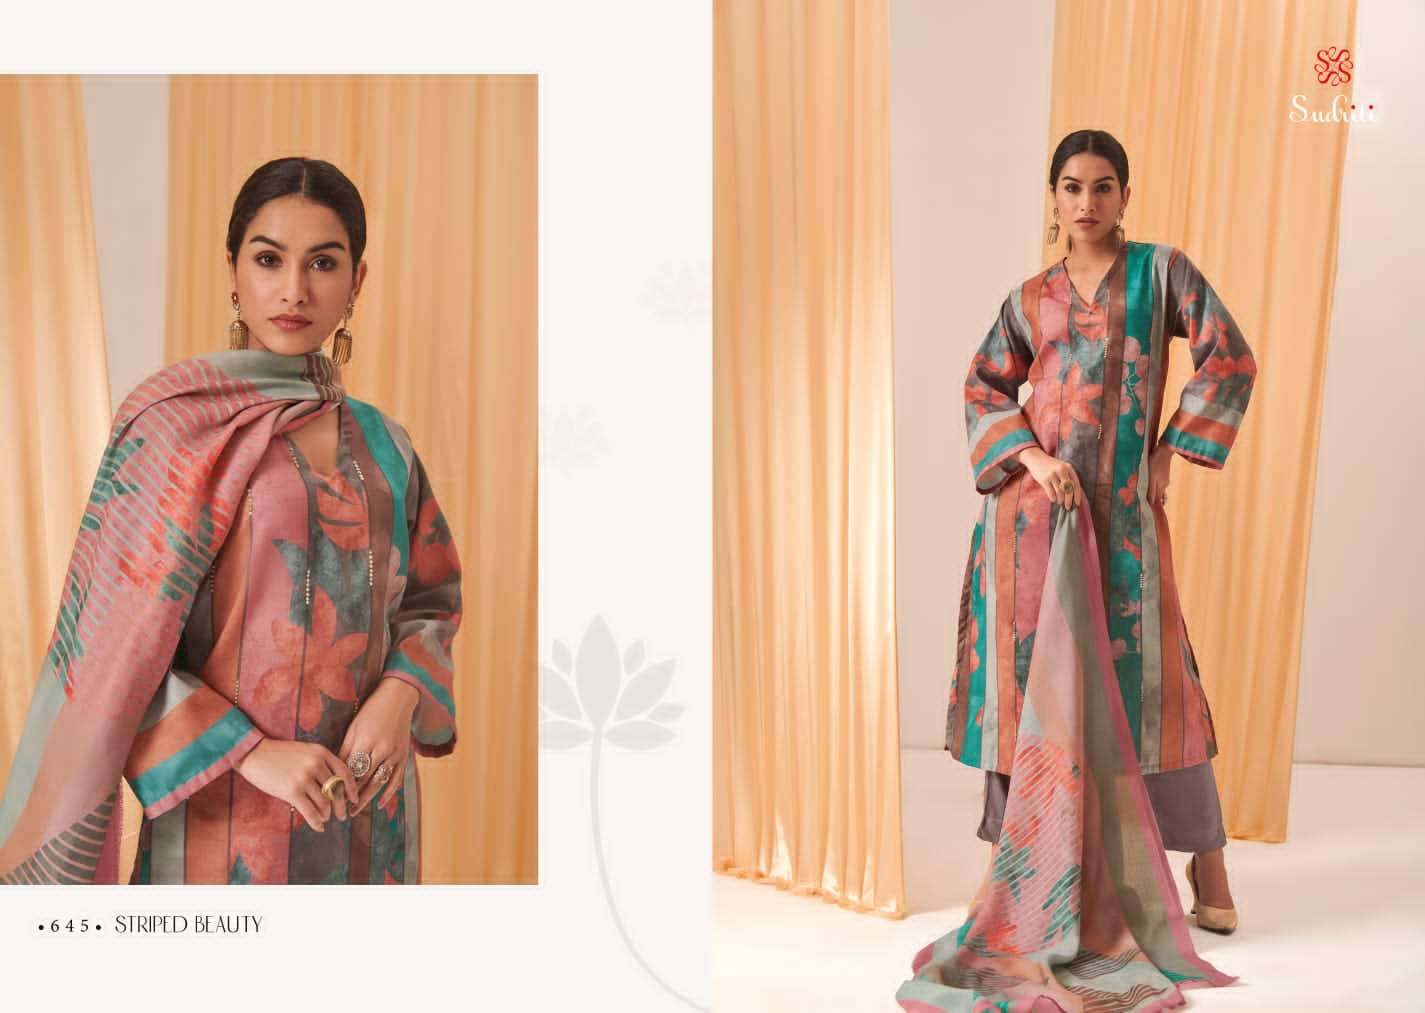 sudriti striped beauty series latest fancy wedding wear salwar kameez wholesaler surat gujarat